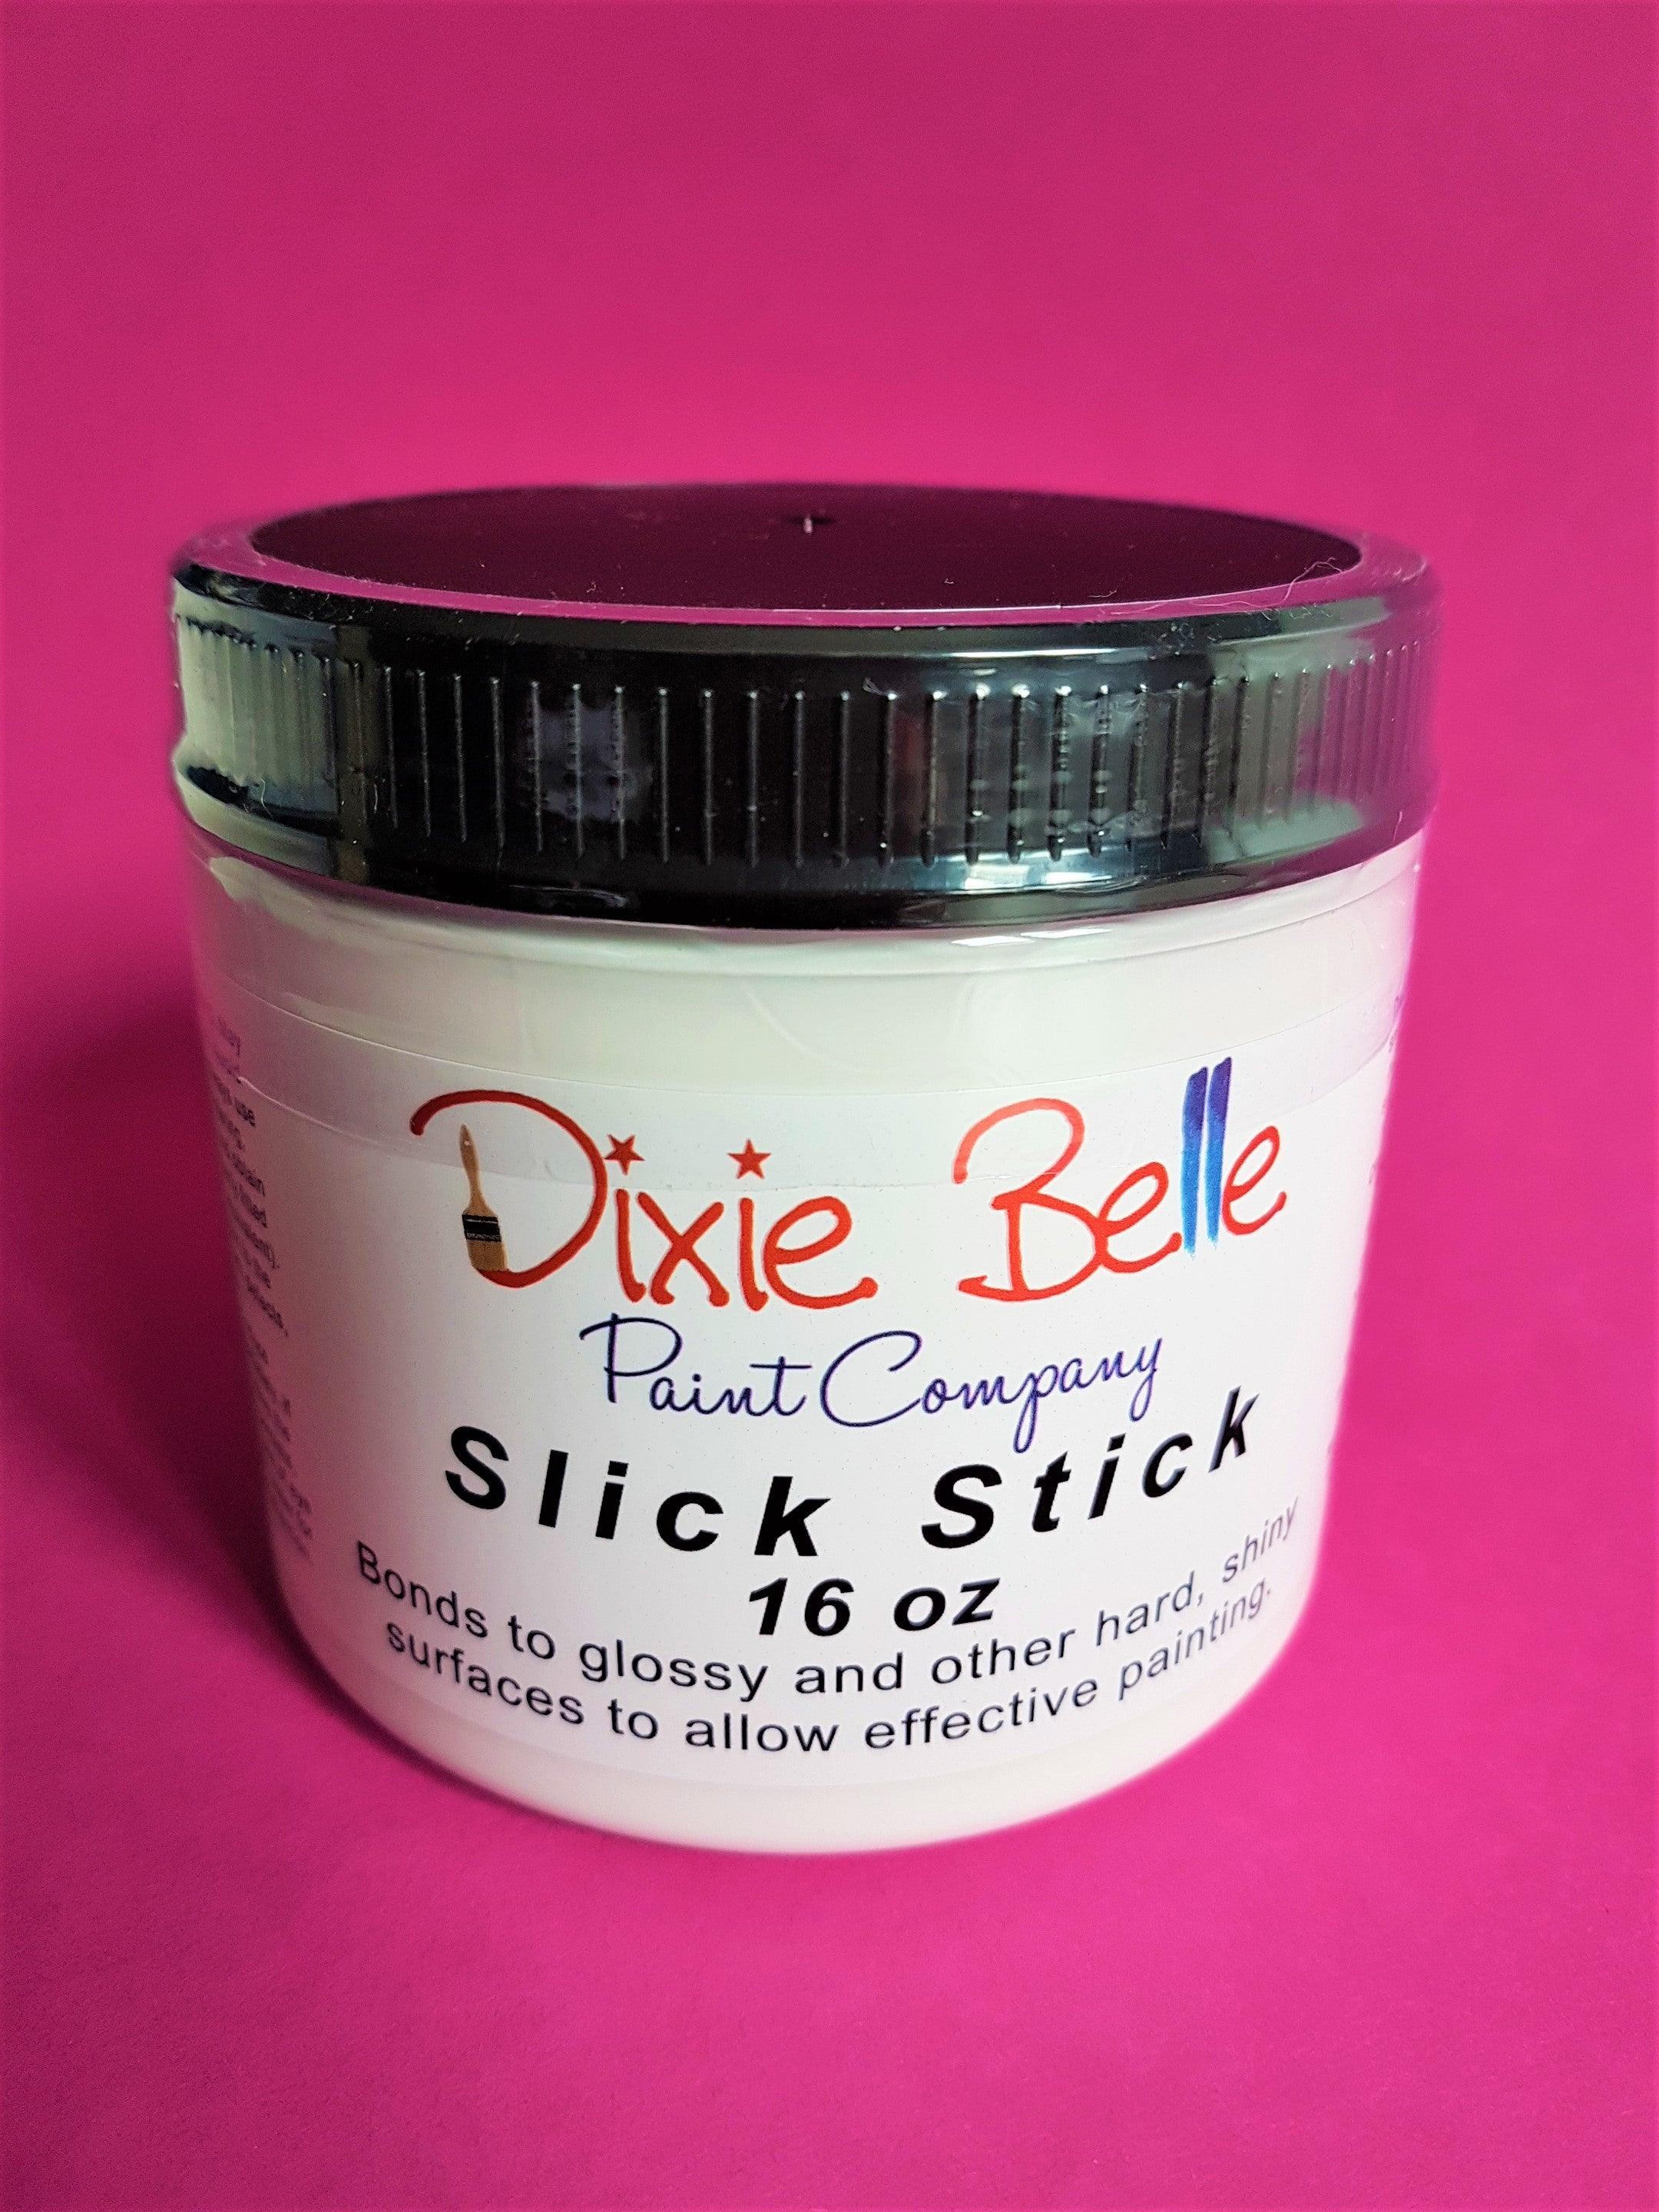 Dixie Belle Slick Stick Haftgrund